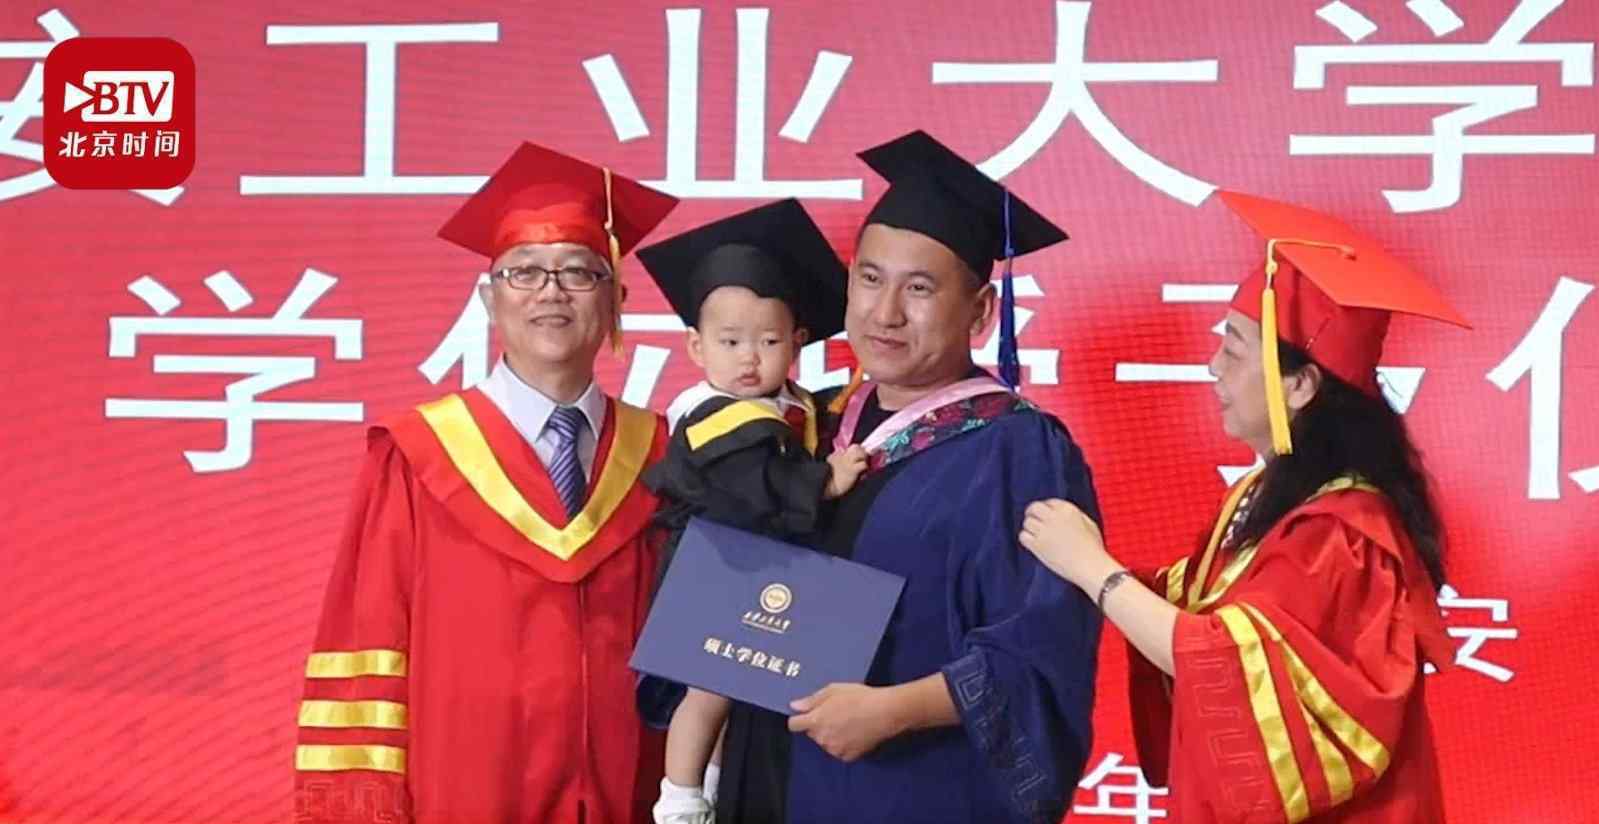 硕士爸爸带1岁宝宝参加毕业典礼 提前20年体验毕业